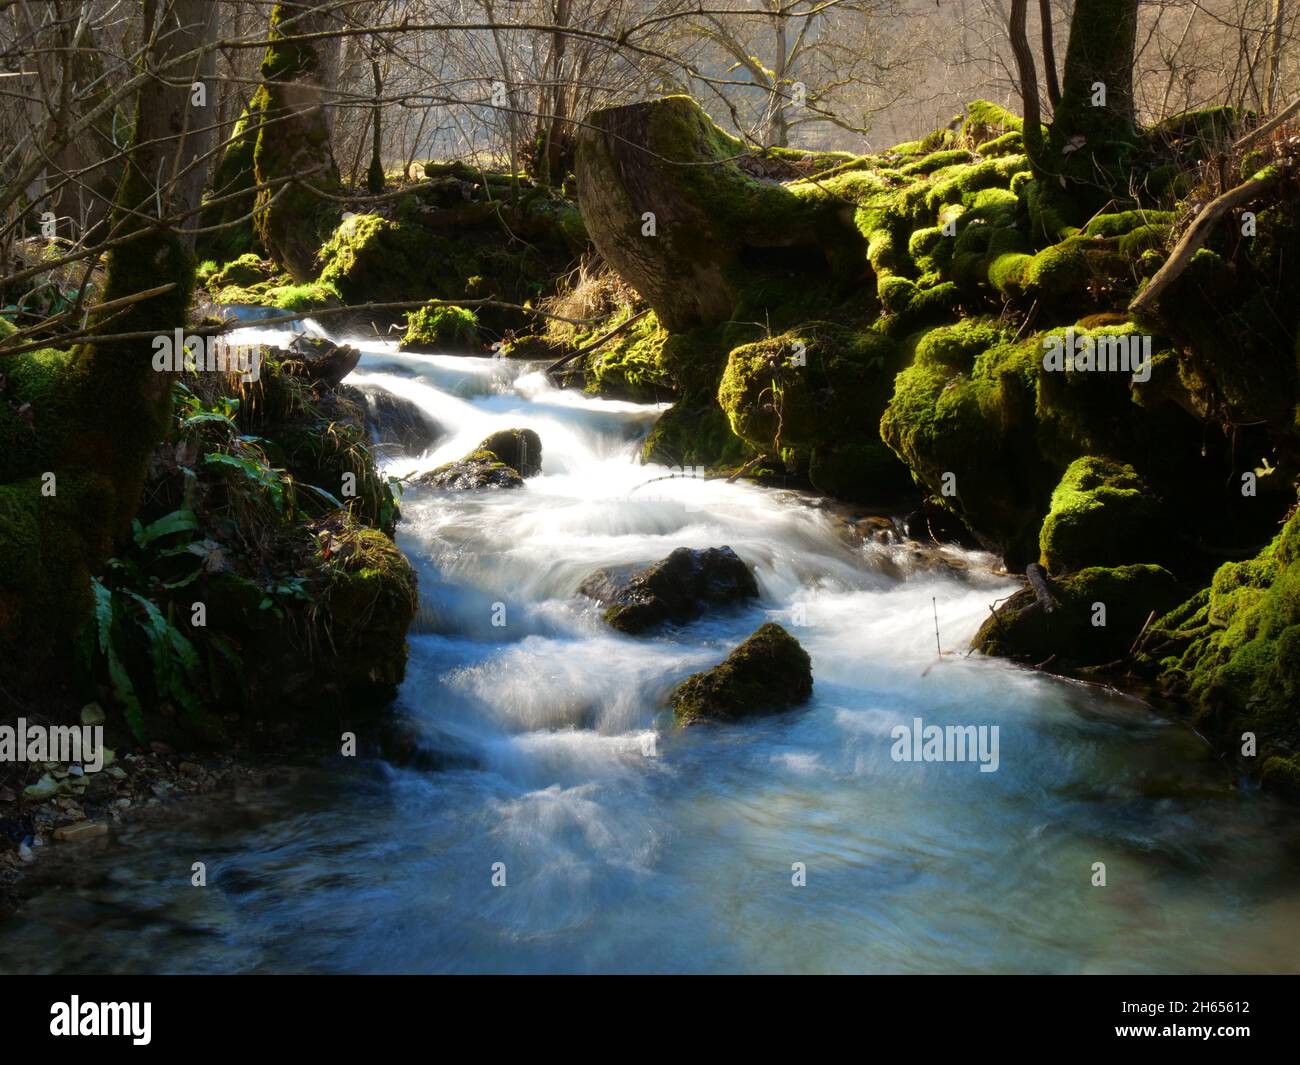 Bad Urach, Germany: River stream in spring Stock Photo